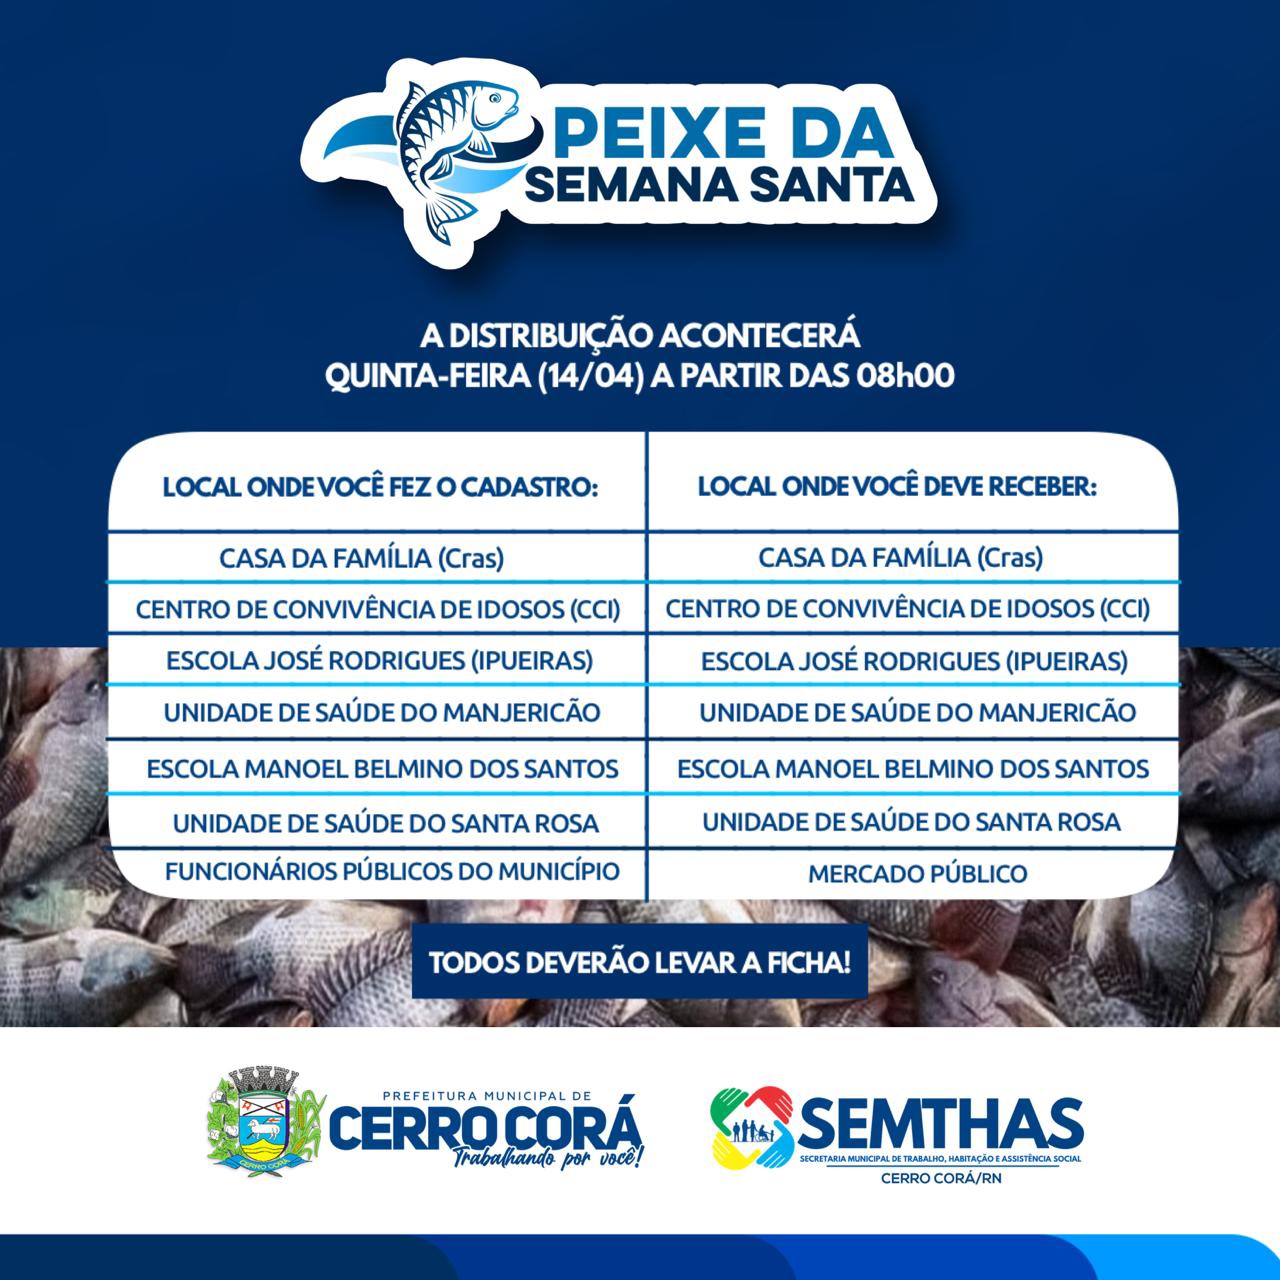 Distribuição do Peixe da Semana Santa em Cerro Corá, confiram aqui: